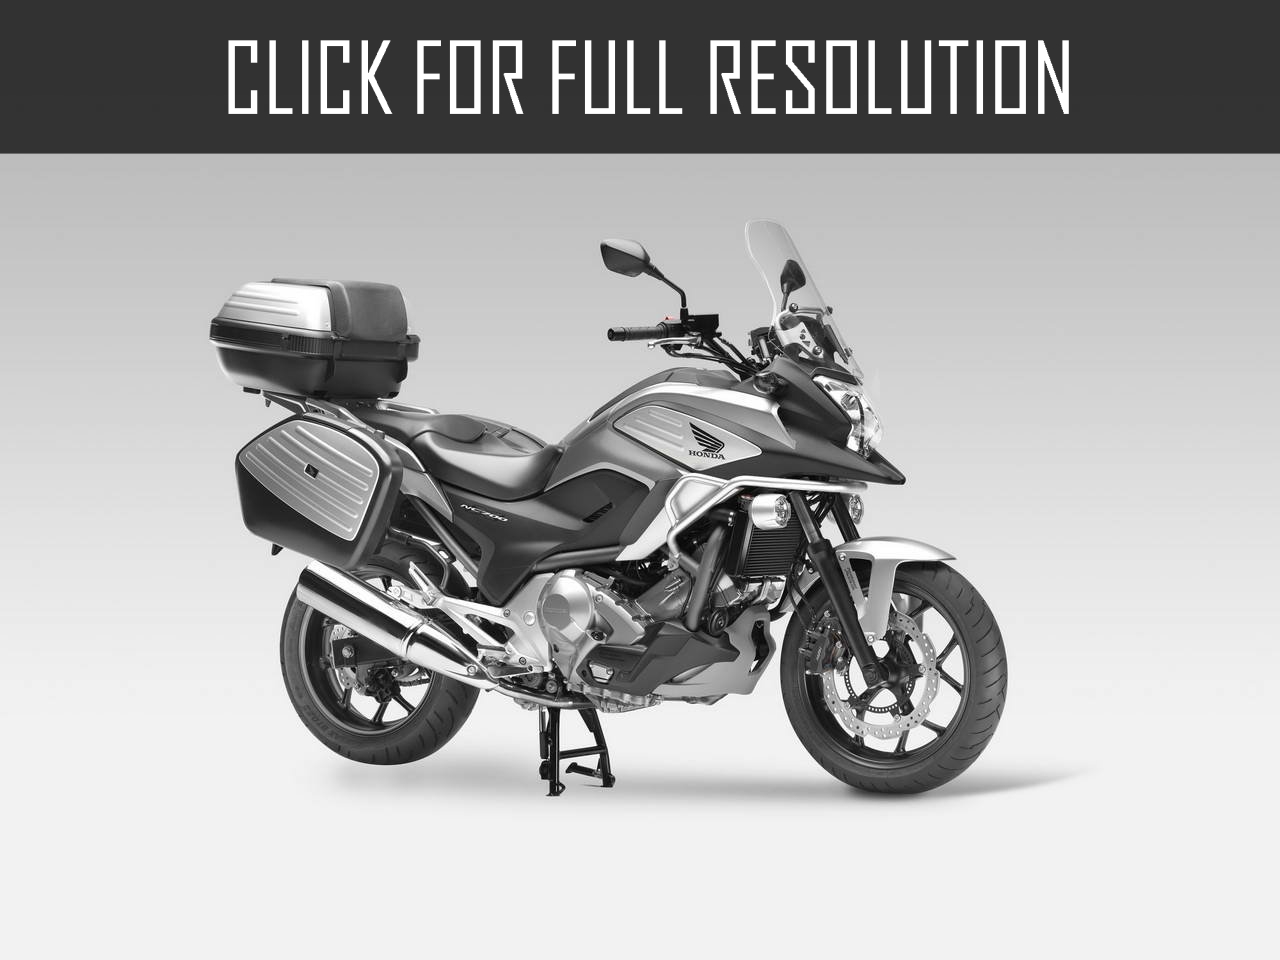 Honda Nc700x Motorcycle